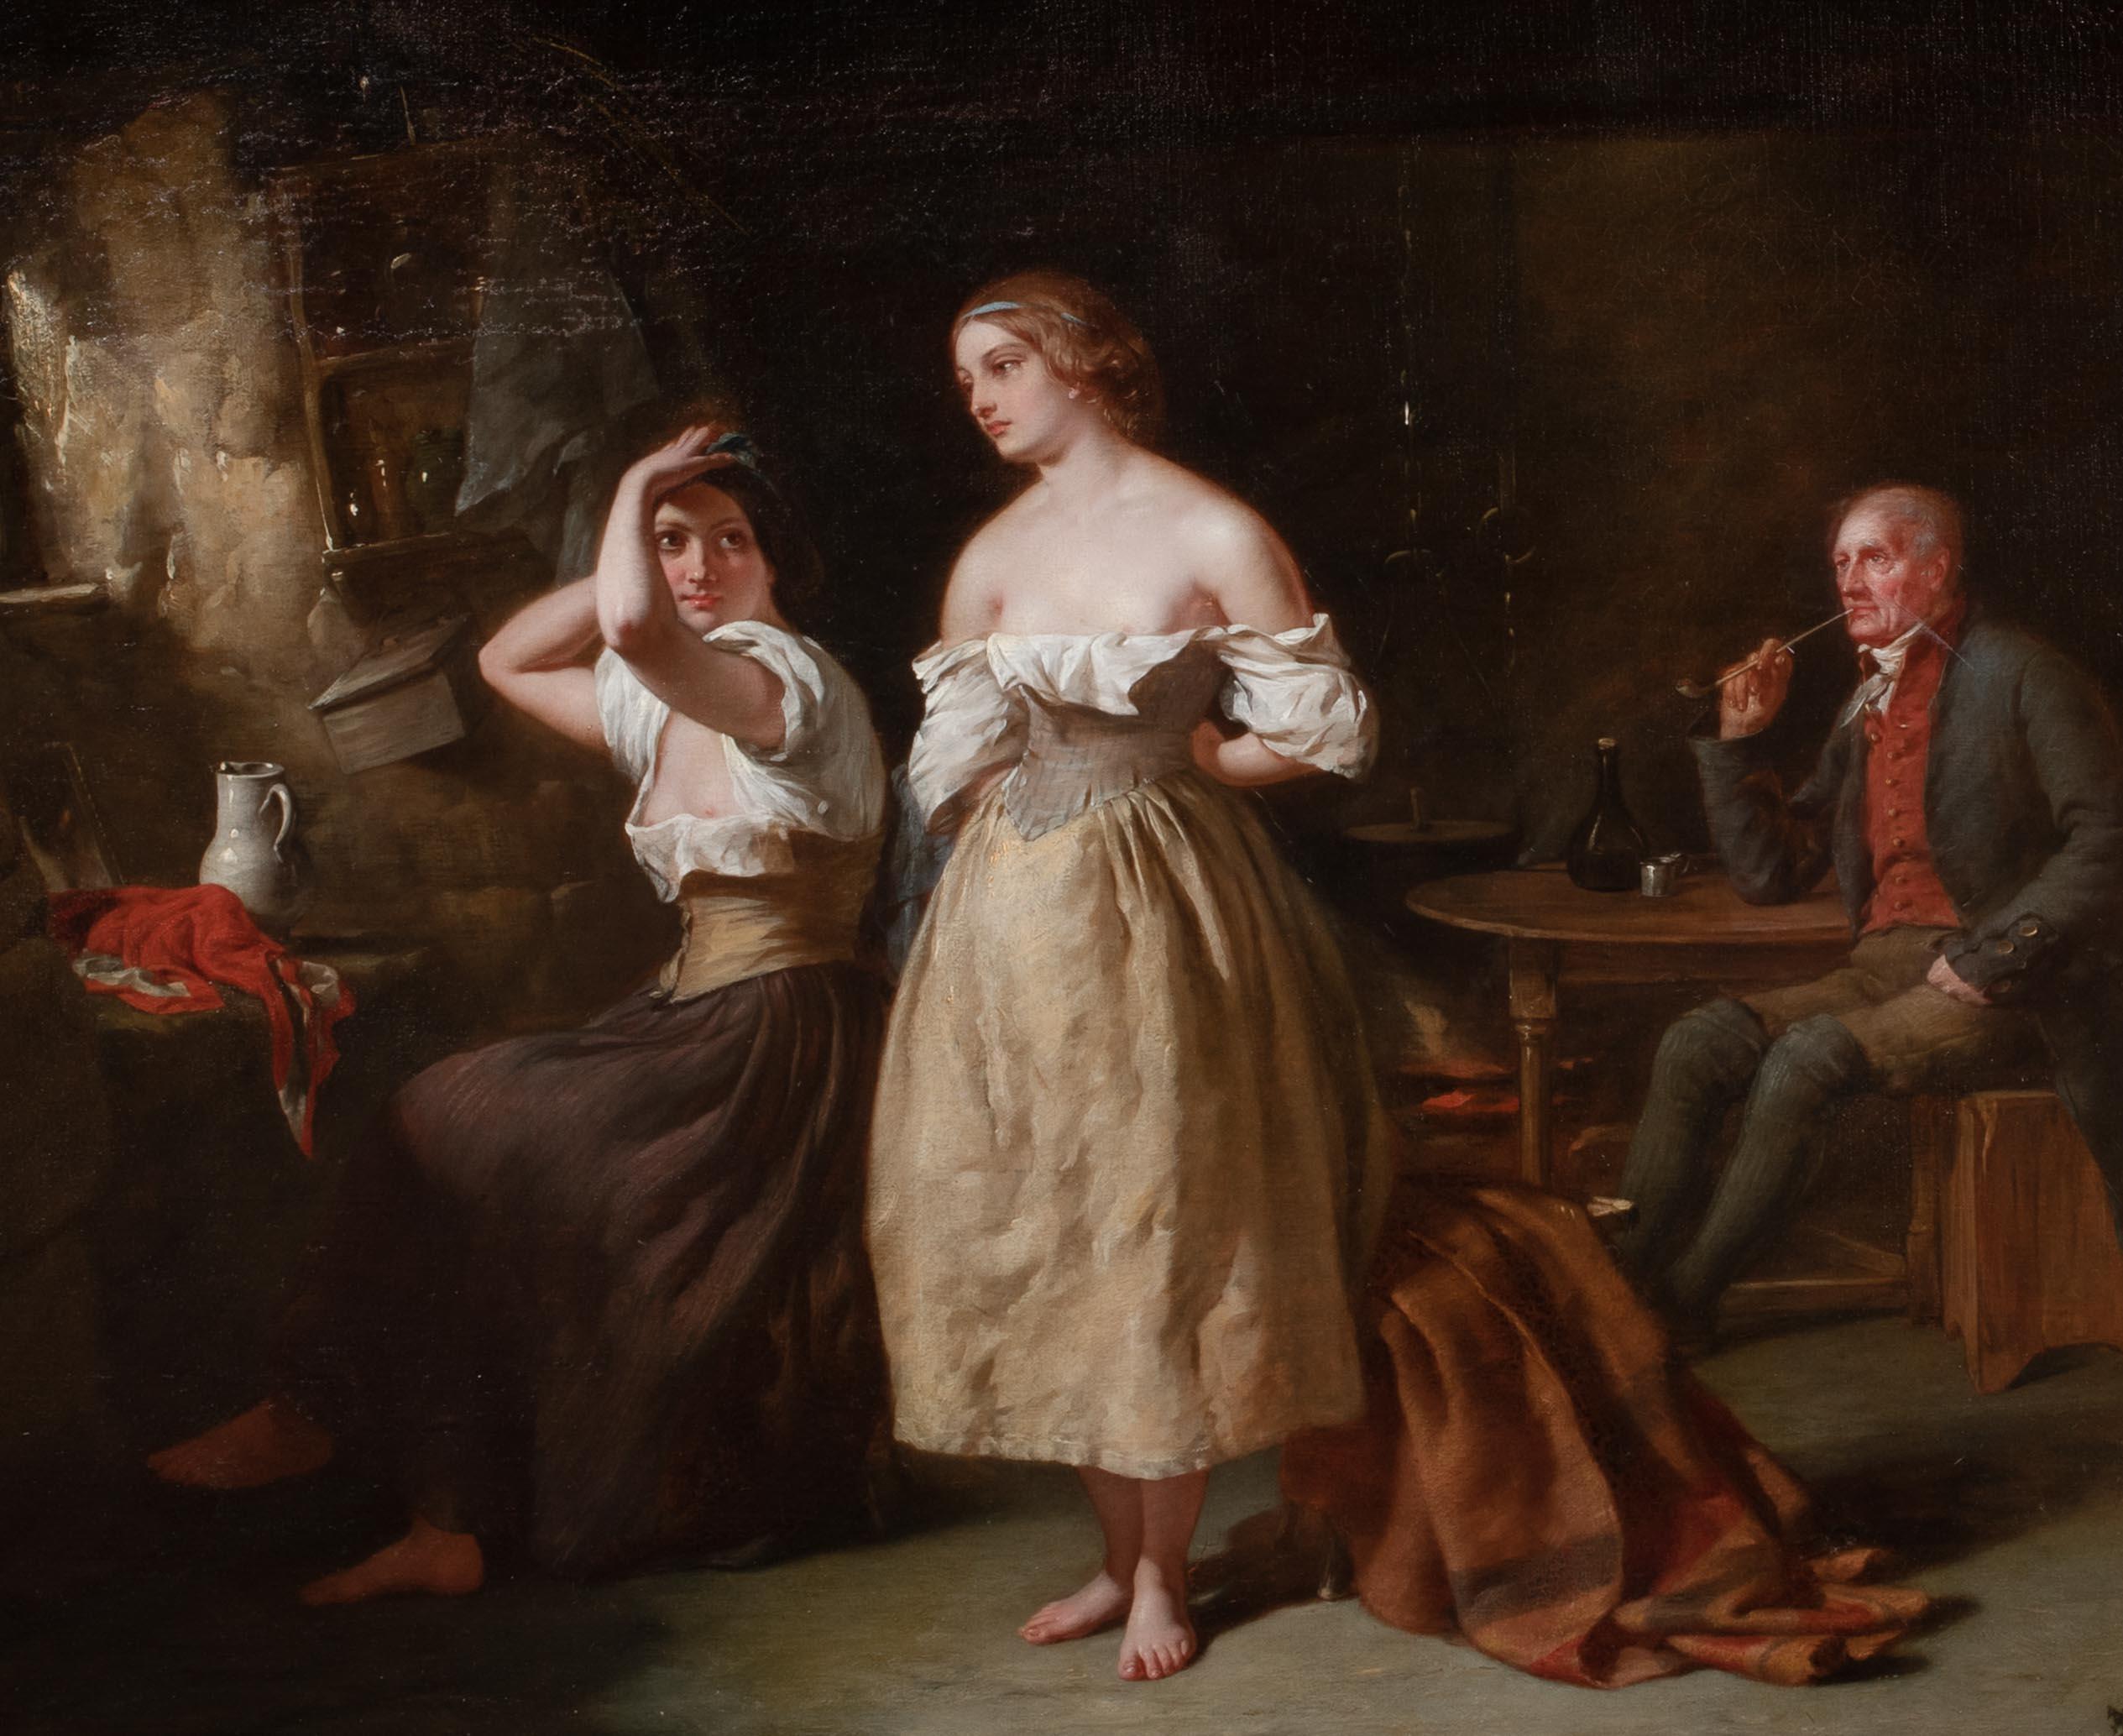 Prostitutes & Pimp In A Brothel Interior, 19th Century For Sale 3